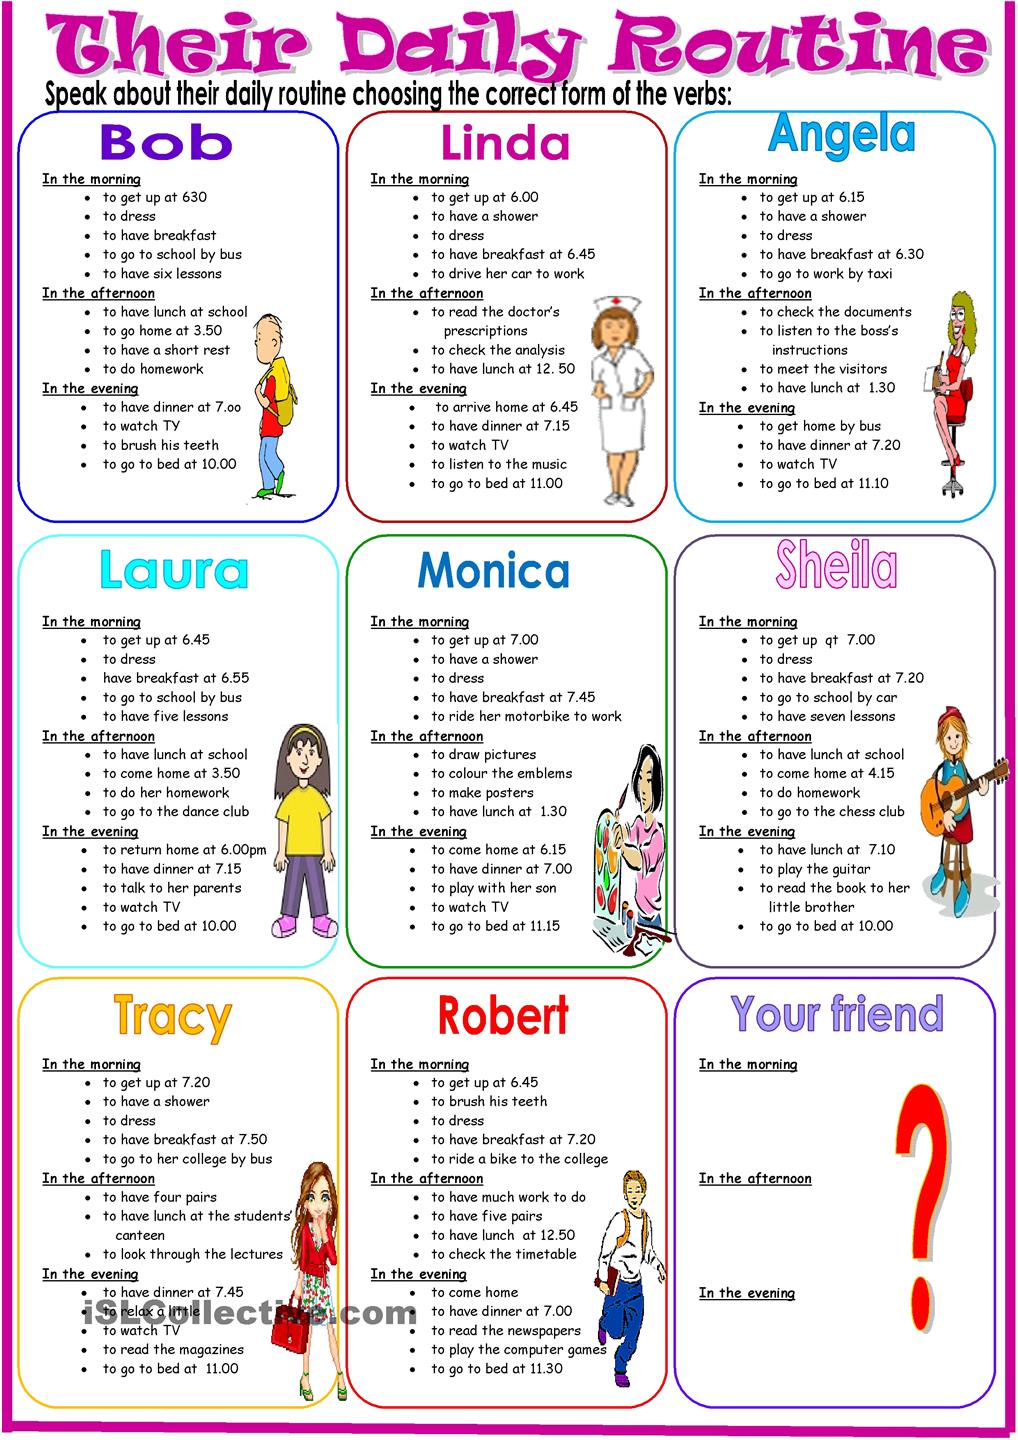 teacher-neidinha-franca-daily-routine-verbs